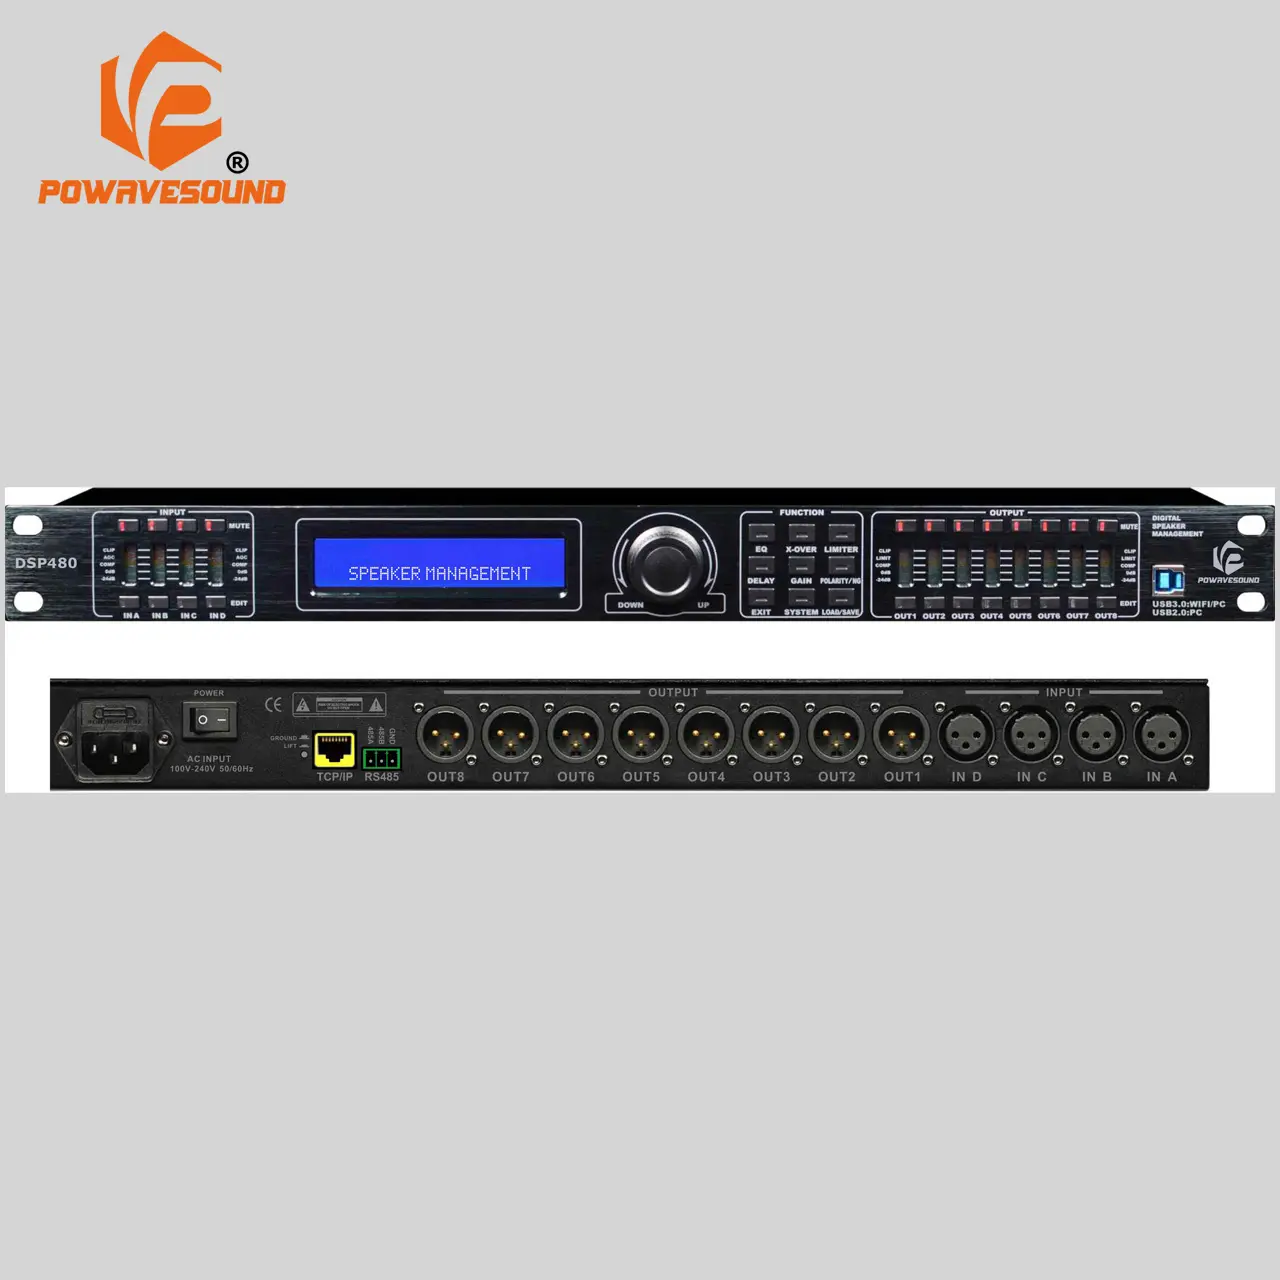 पेशेवर डिजिटल ऑडियो प्रोसेसर में बाहर 8 में 2 और 4 8 बाहर डीएसपी स्पीकर प्रबंधन प्रणाली डिवाइस एफएम powavesound चीन